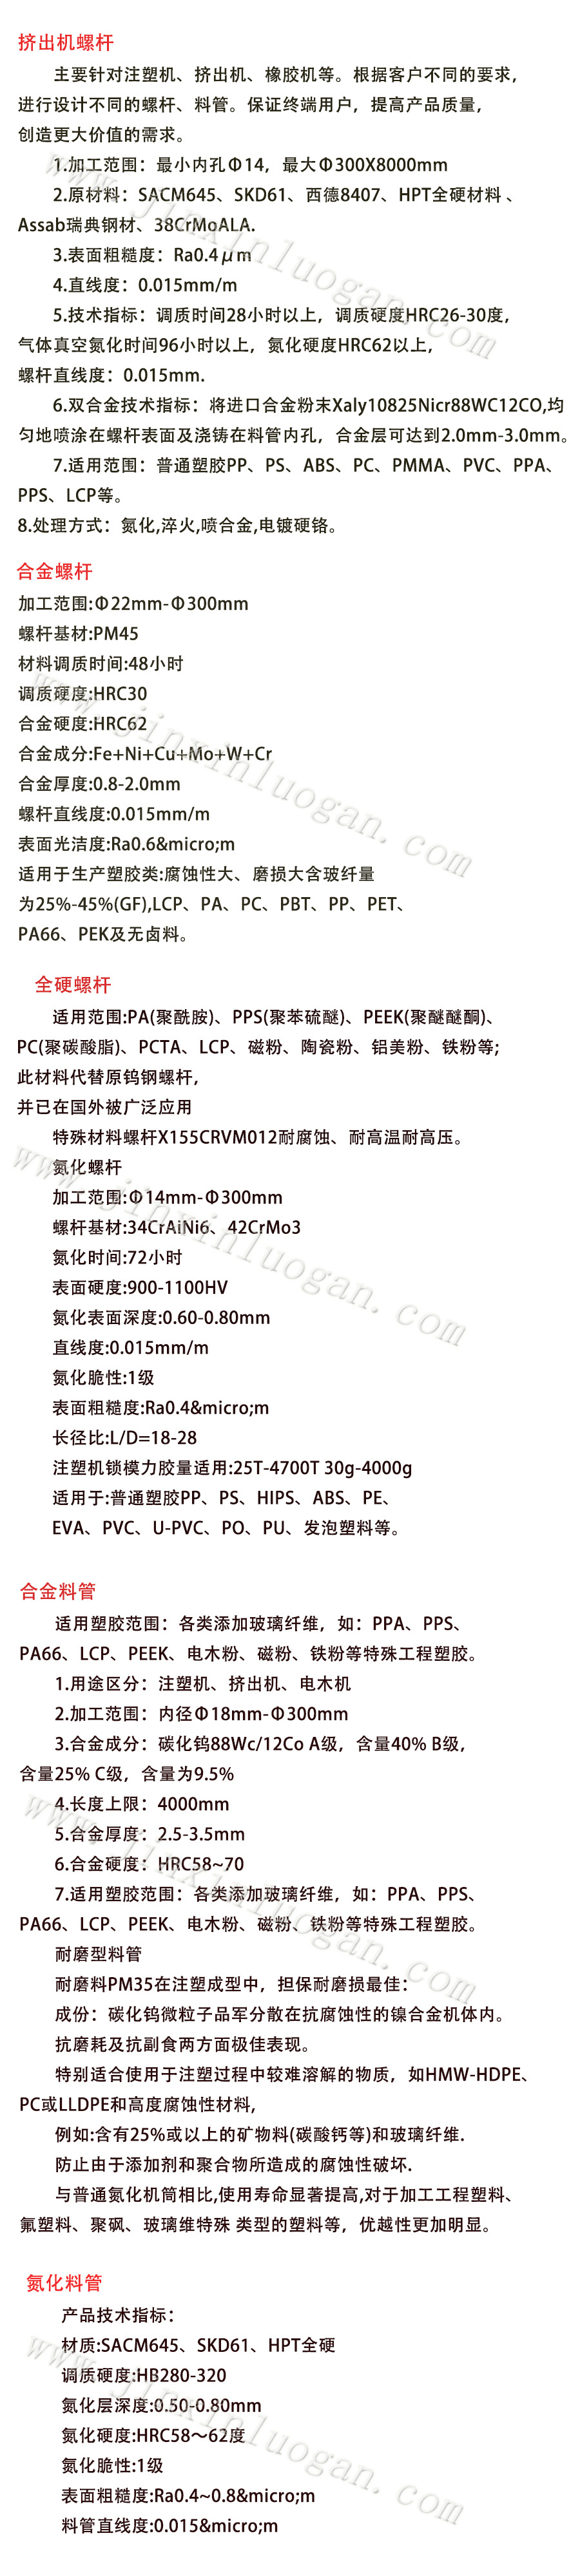 广东LCP PC PP专用螺杆料筒 双合金螺杆量身定制示例图6